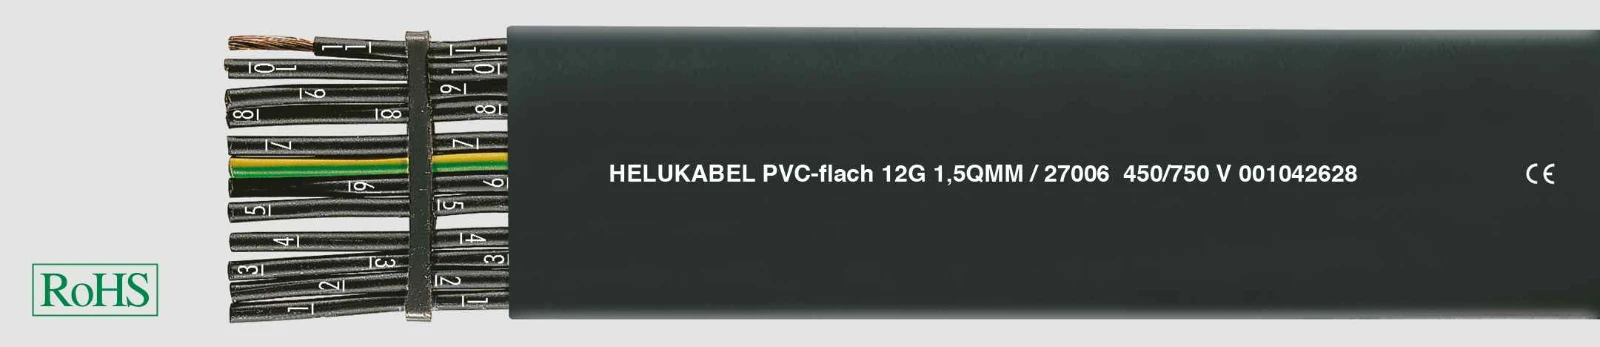 Helukabel Voedingskabel < 1 kV, voor beweegbare toepassingen PVC-flat (H05 VVH6-F/H07 VVH6-F)